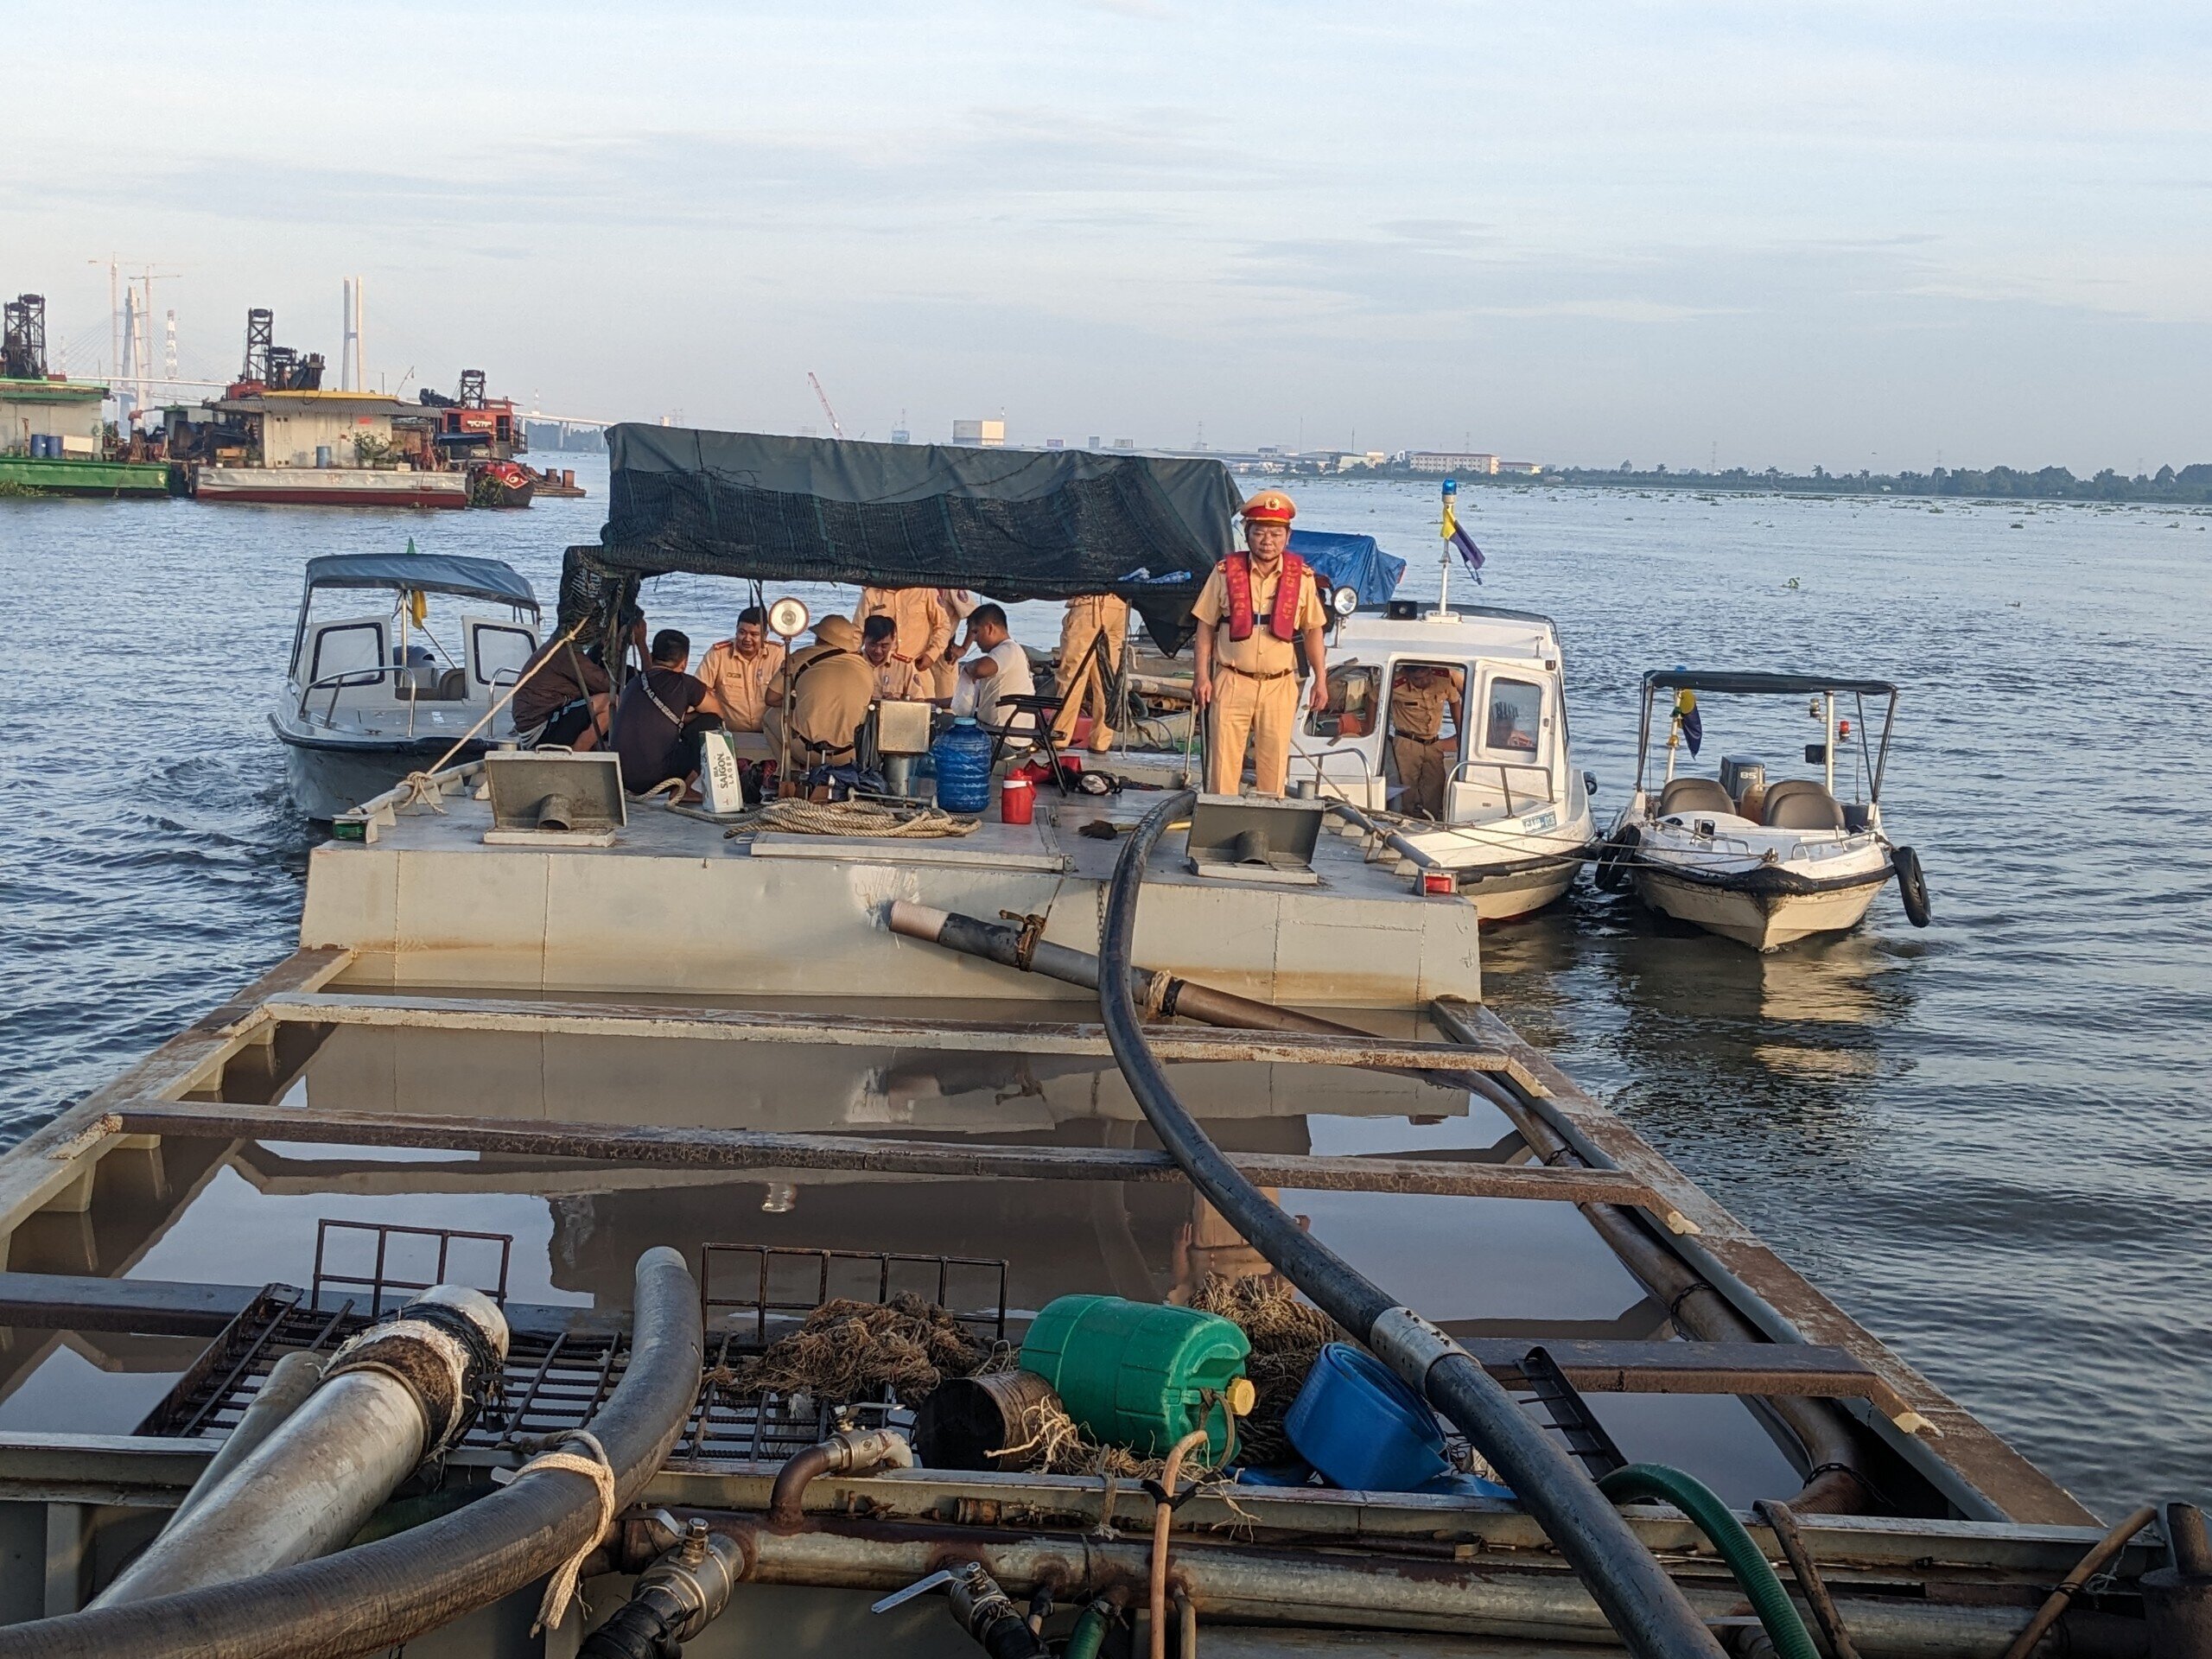 Cảnh sát mật phục bắt giữ 7 tàu cát tặc trên sông Tiền trong đêm - 1